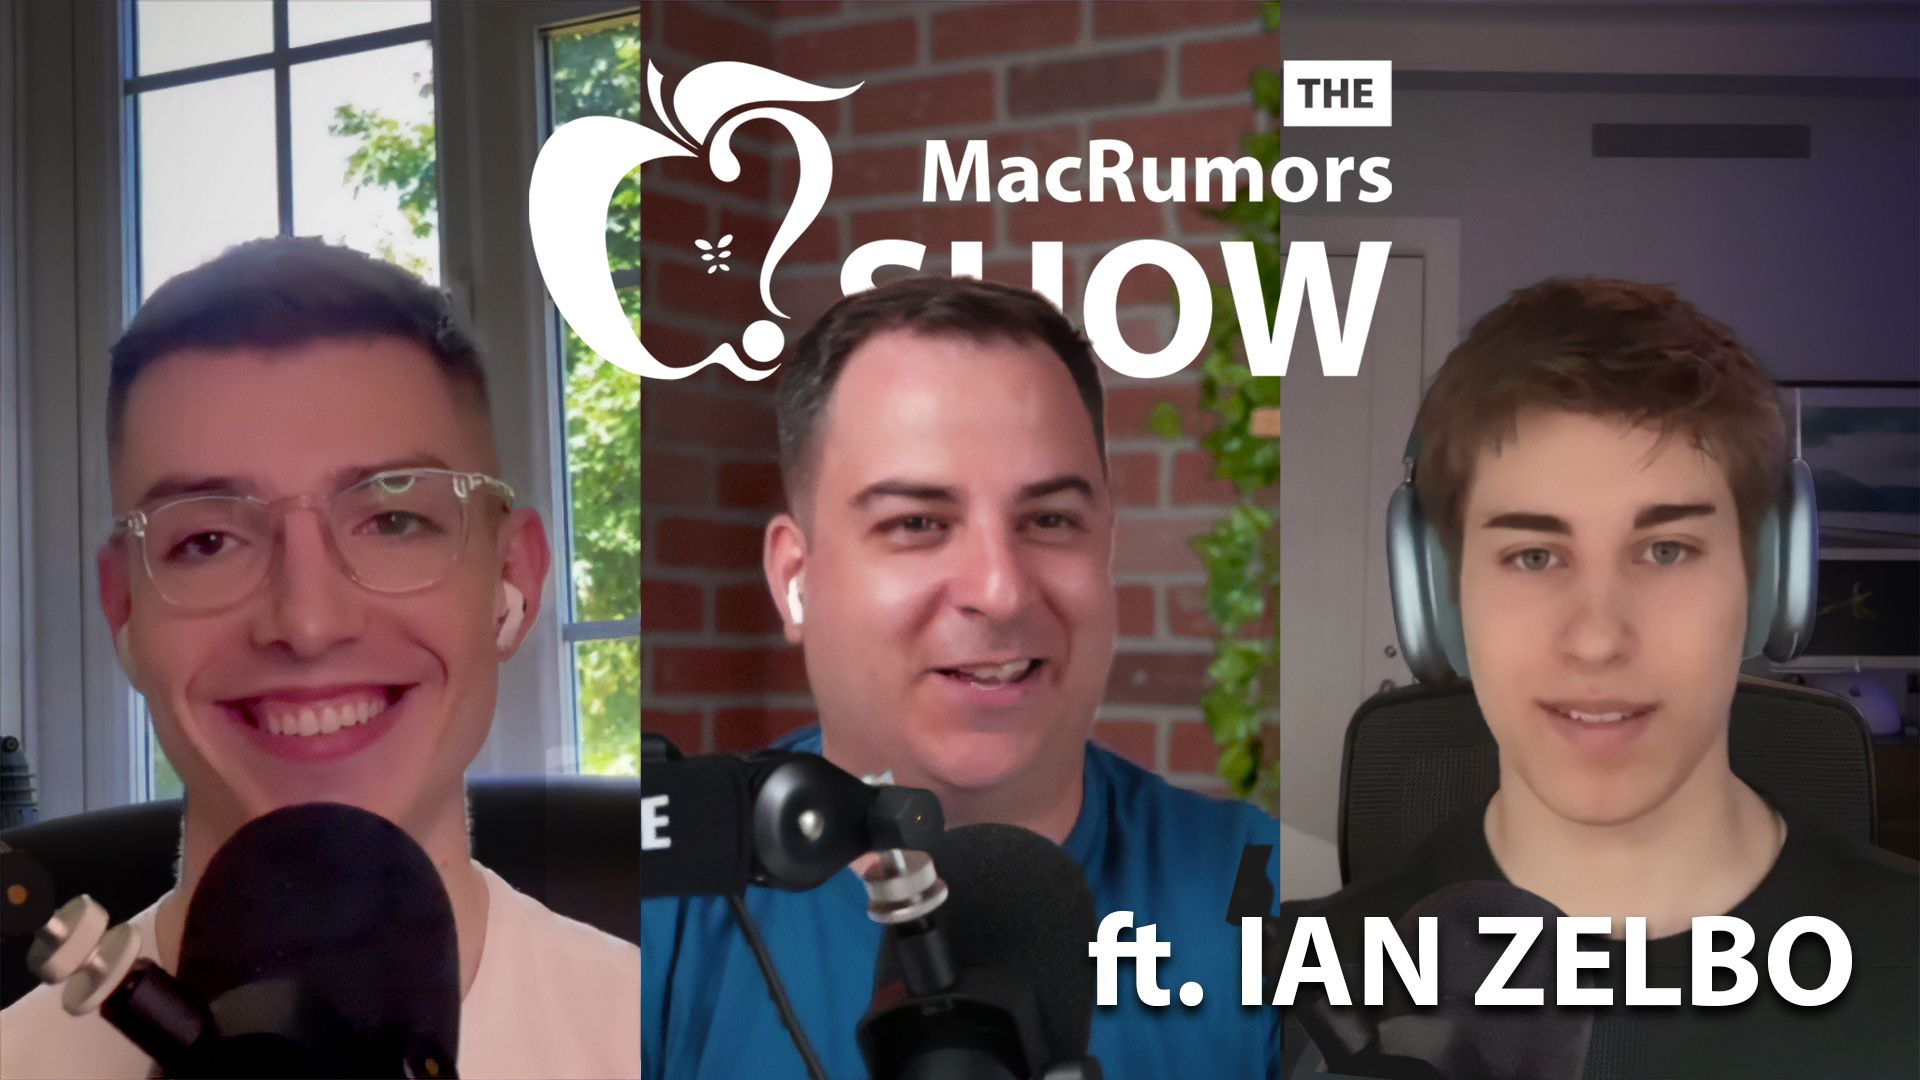 The MacRumors Show: Ian Zelbo habla sobre los rumores de diseño del iPhone 14 Pro y Apple Watch Series 8